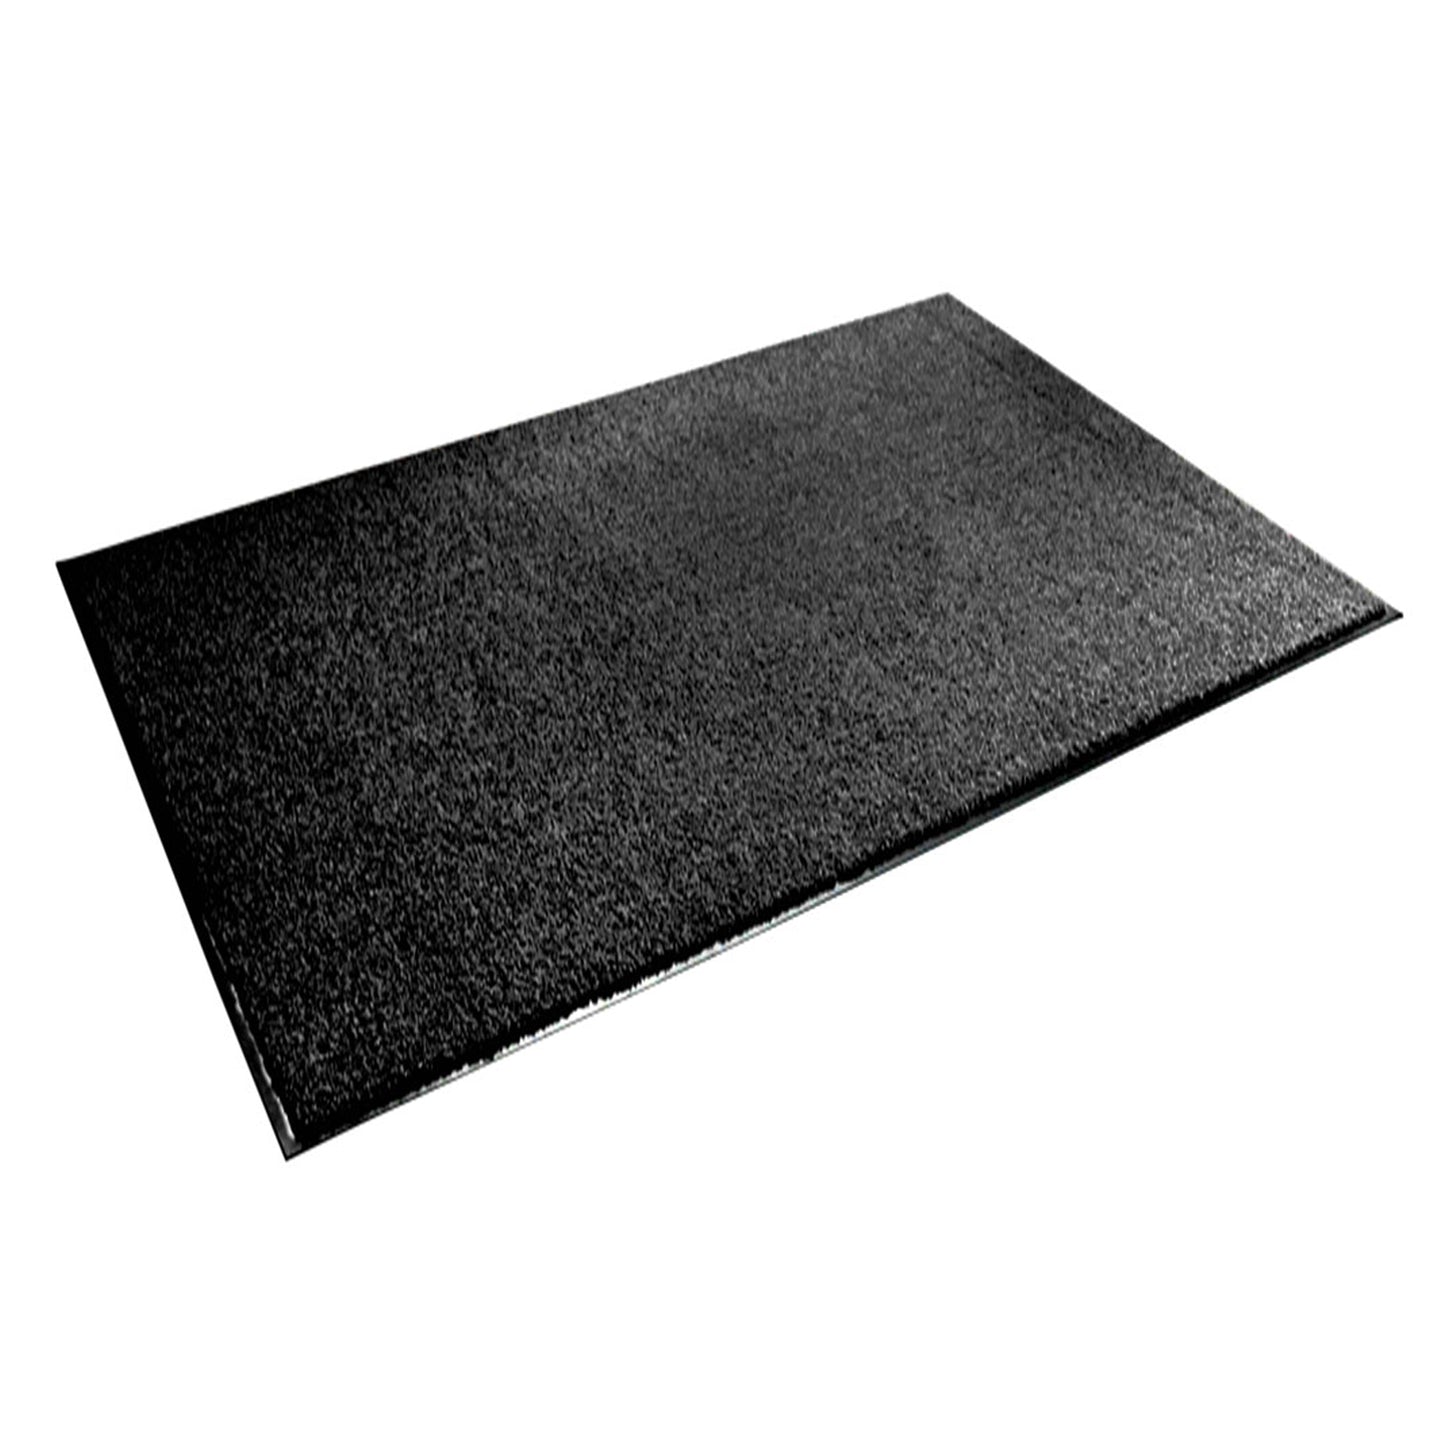 Buy 1 get 1 Free: Doormat 40x60cm